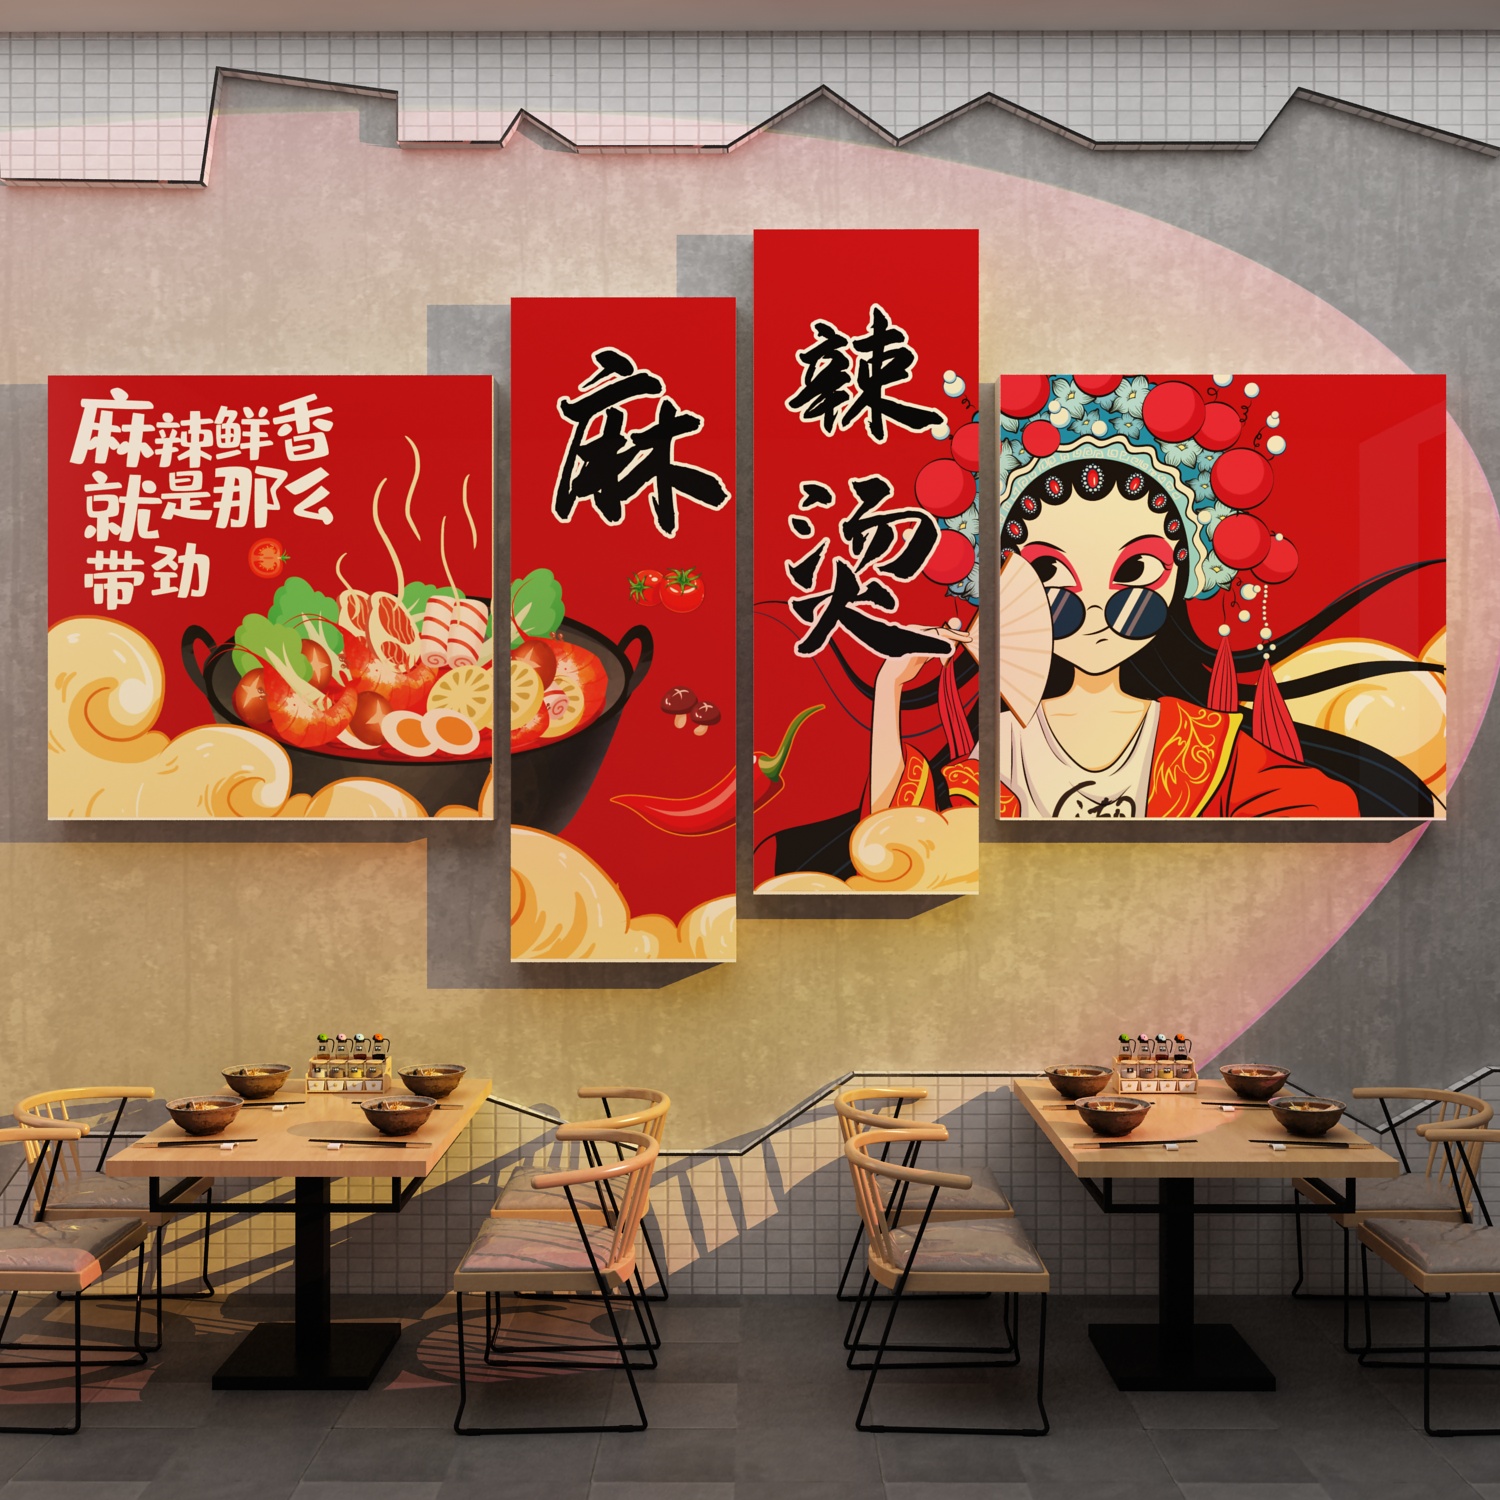 麻辣烫广告贴纸店铺墙面装饰修设计壁画网红用品餐饮小吃火锅海报